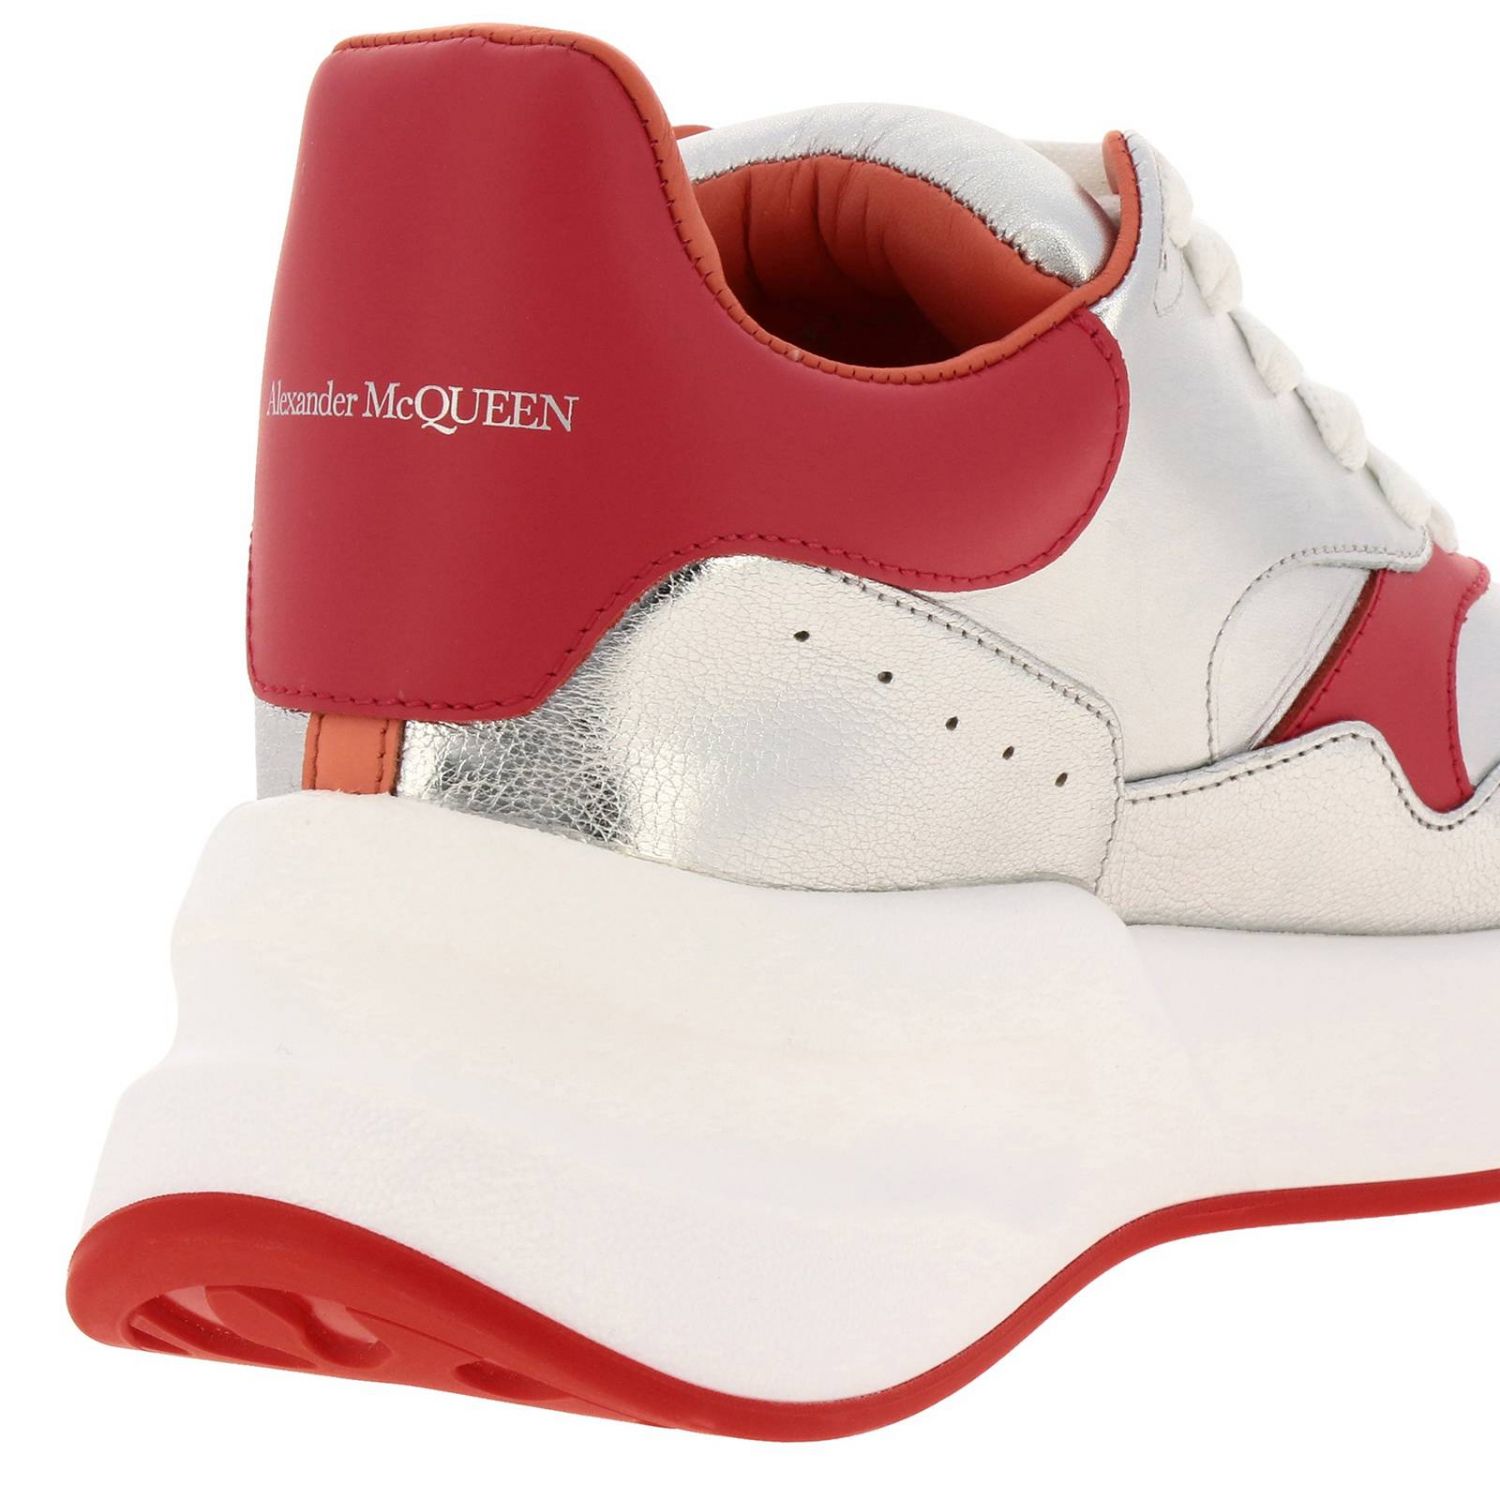 Buy > alexander mcqueen scarpe outlet > in stock